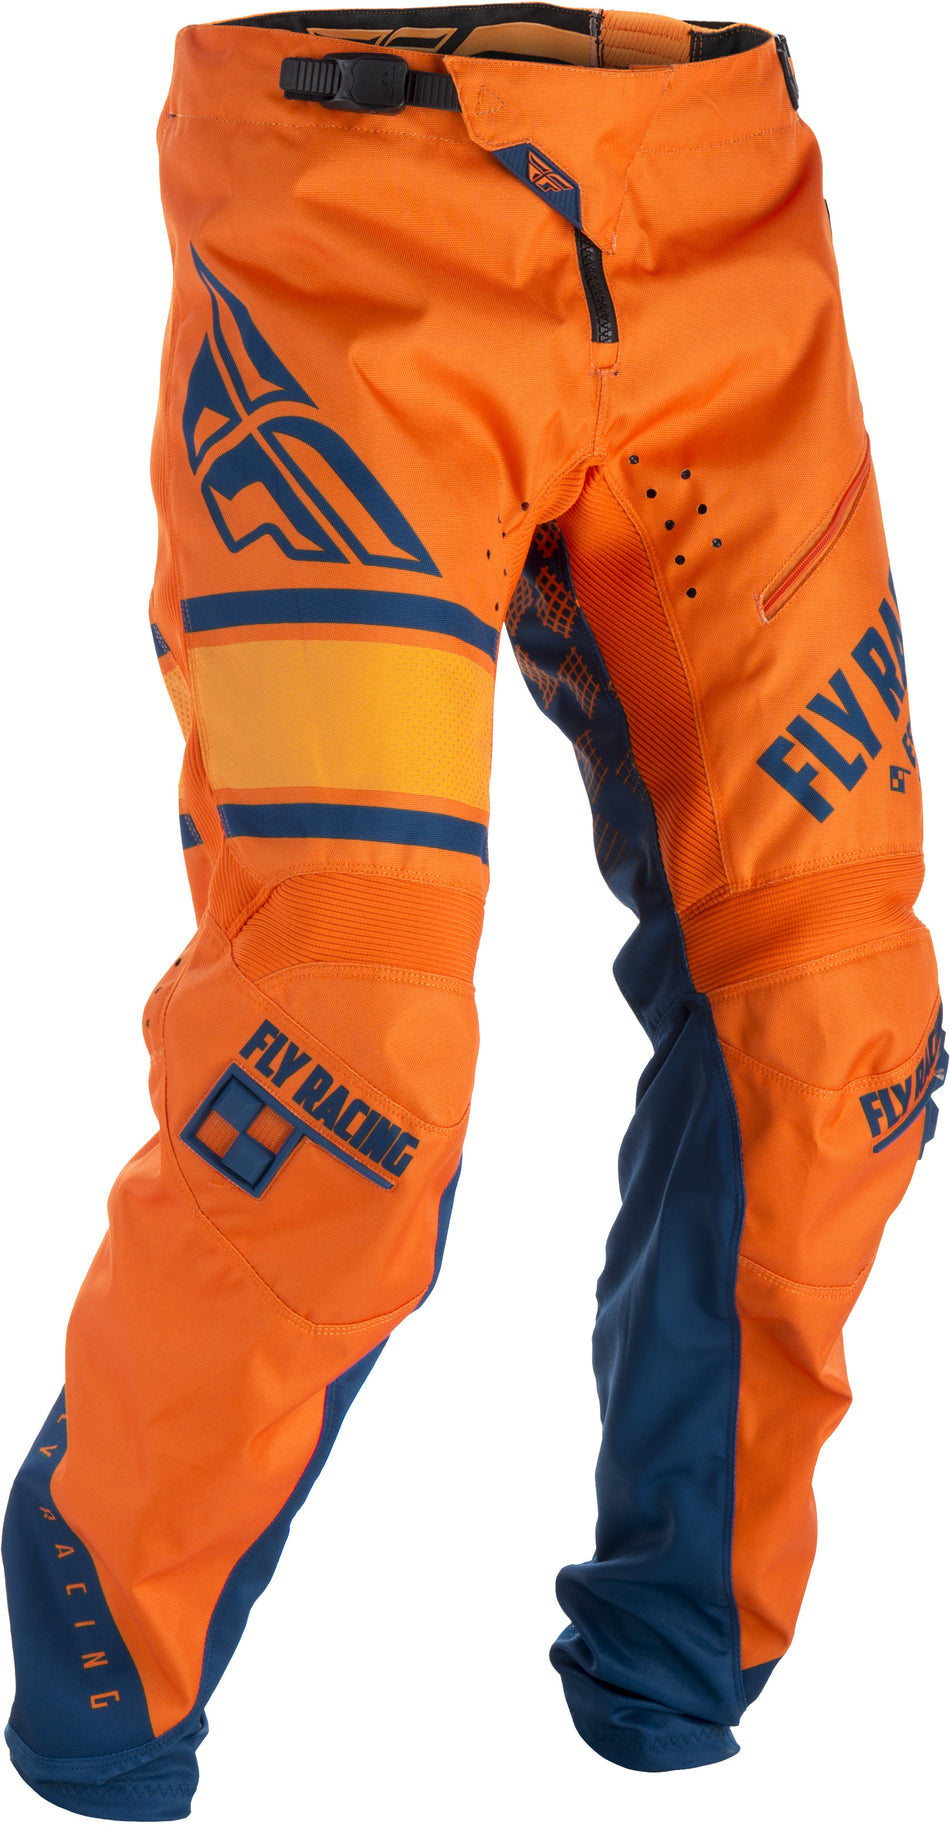 FLY RACING Kinetic Era Bicycle Pants Orange/Navy Sz 38 371-02838